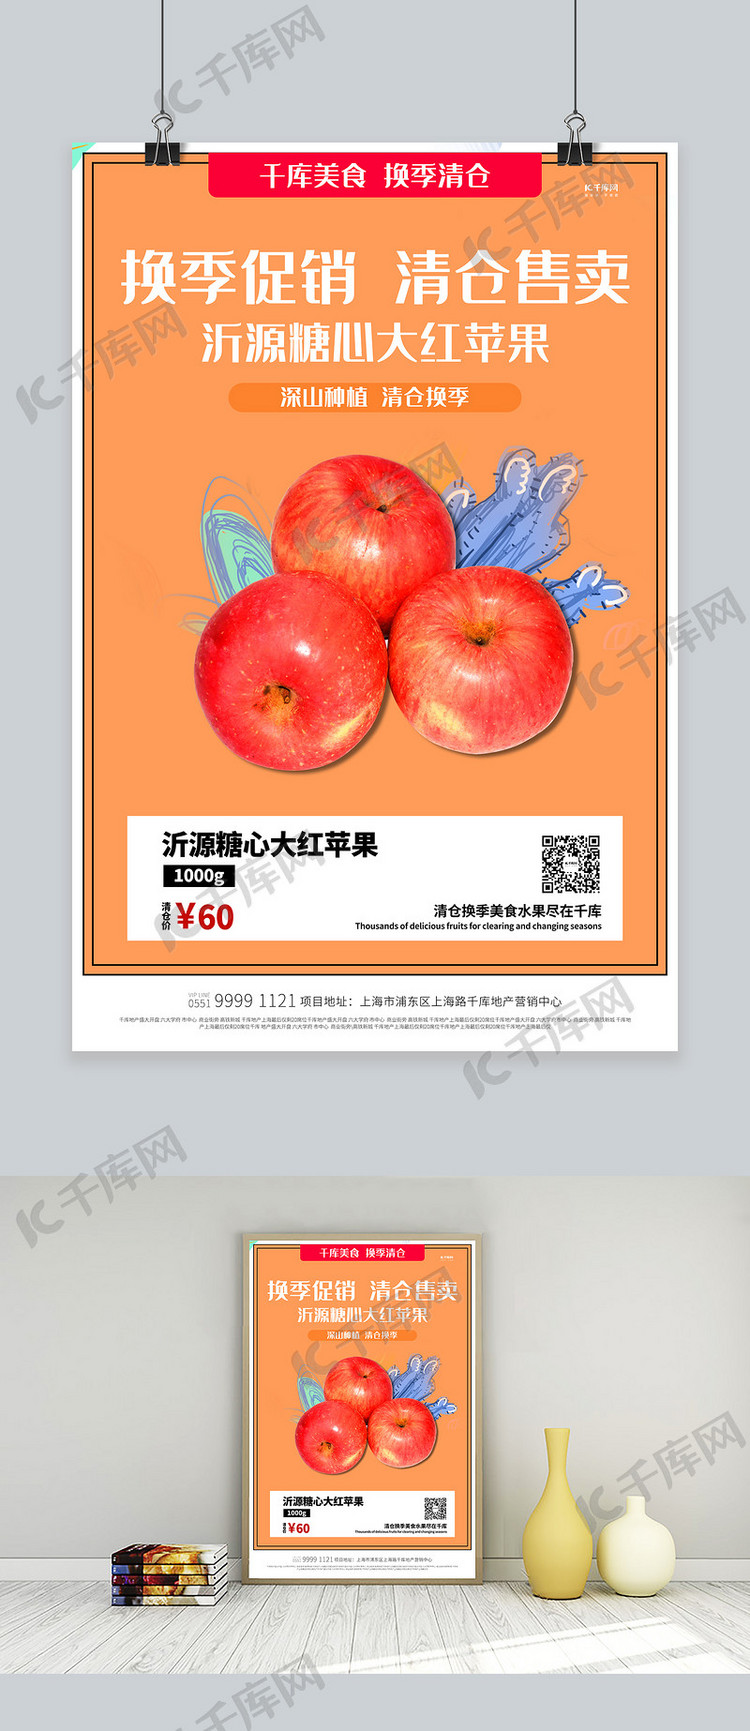 美食清仓苹果橙色创意海报